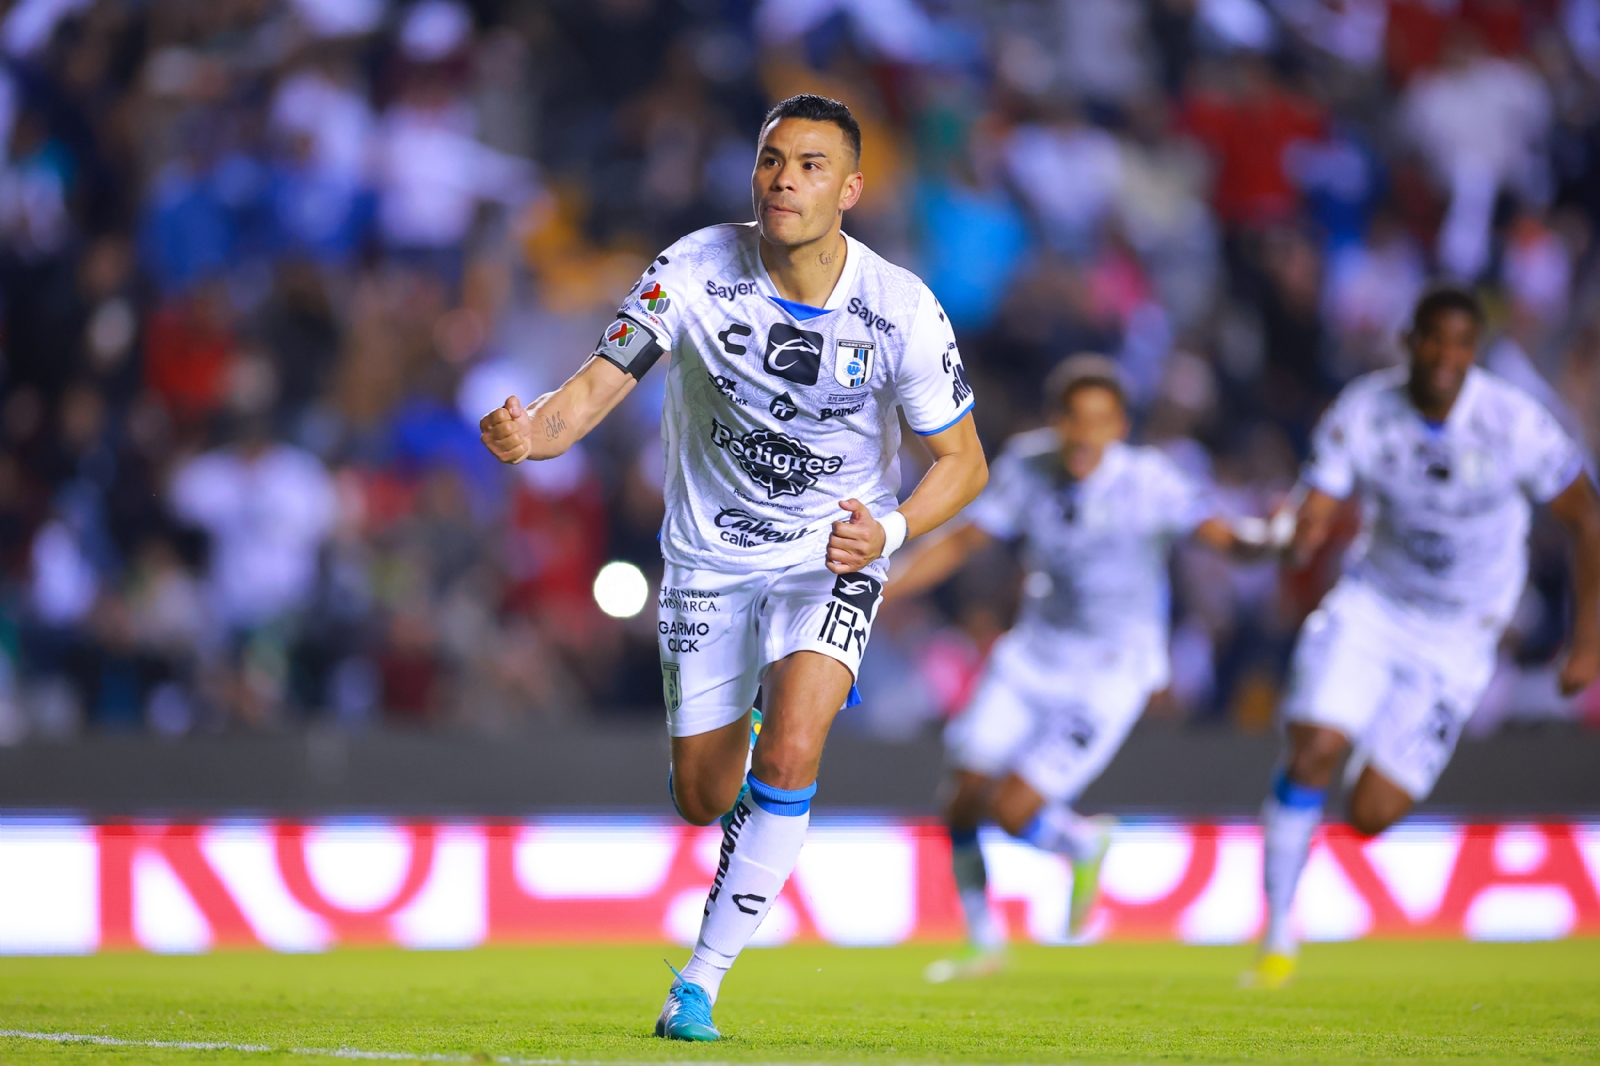 Oficial | Liga MX ADVIERTE que habrá mano dura en el Estadio del Querétaro